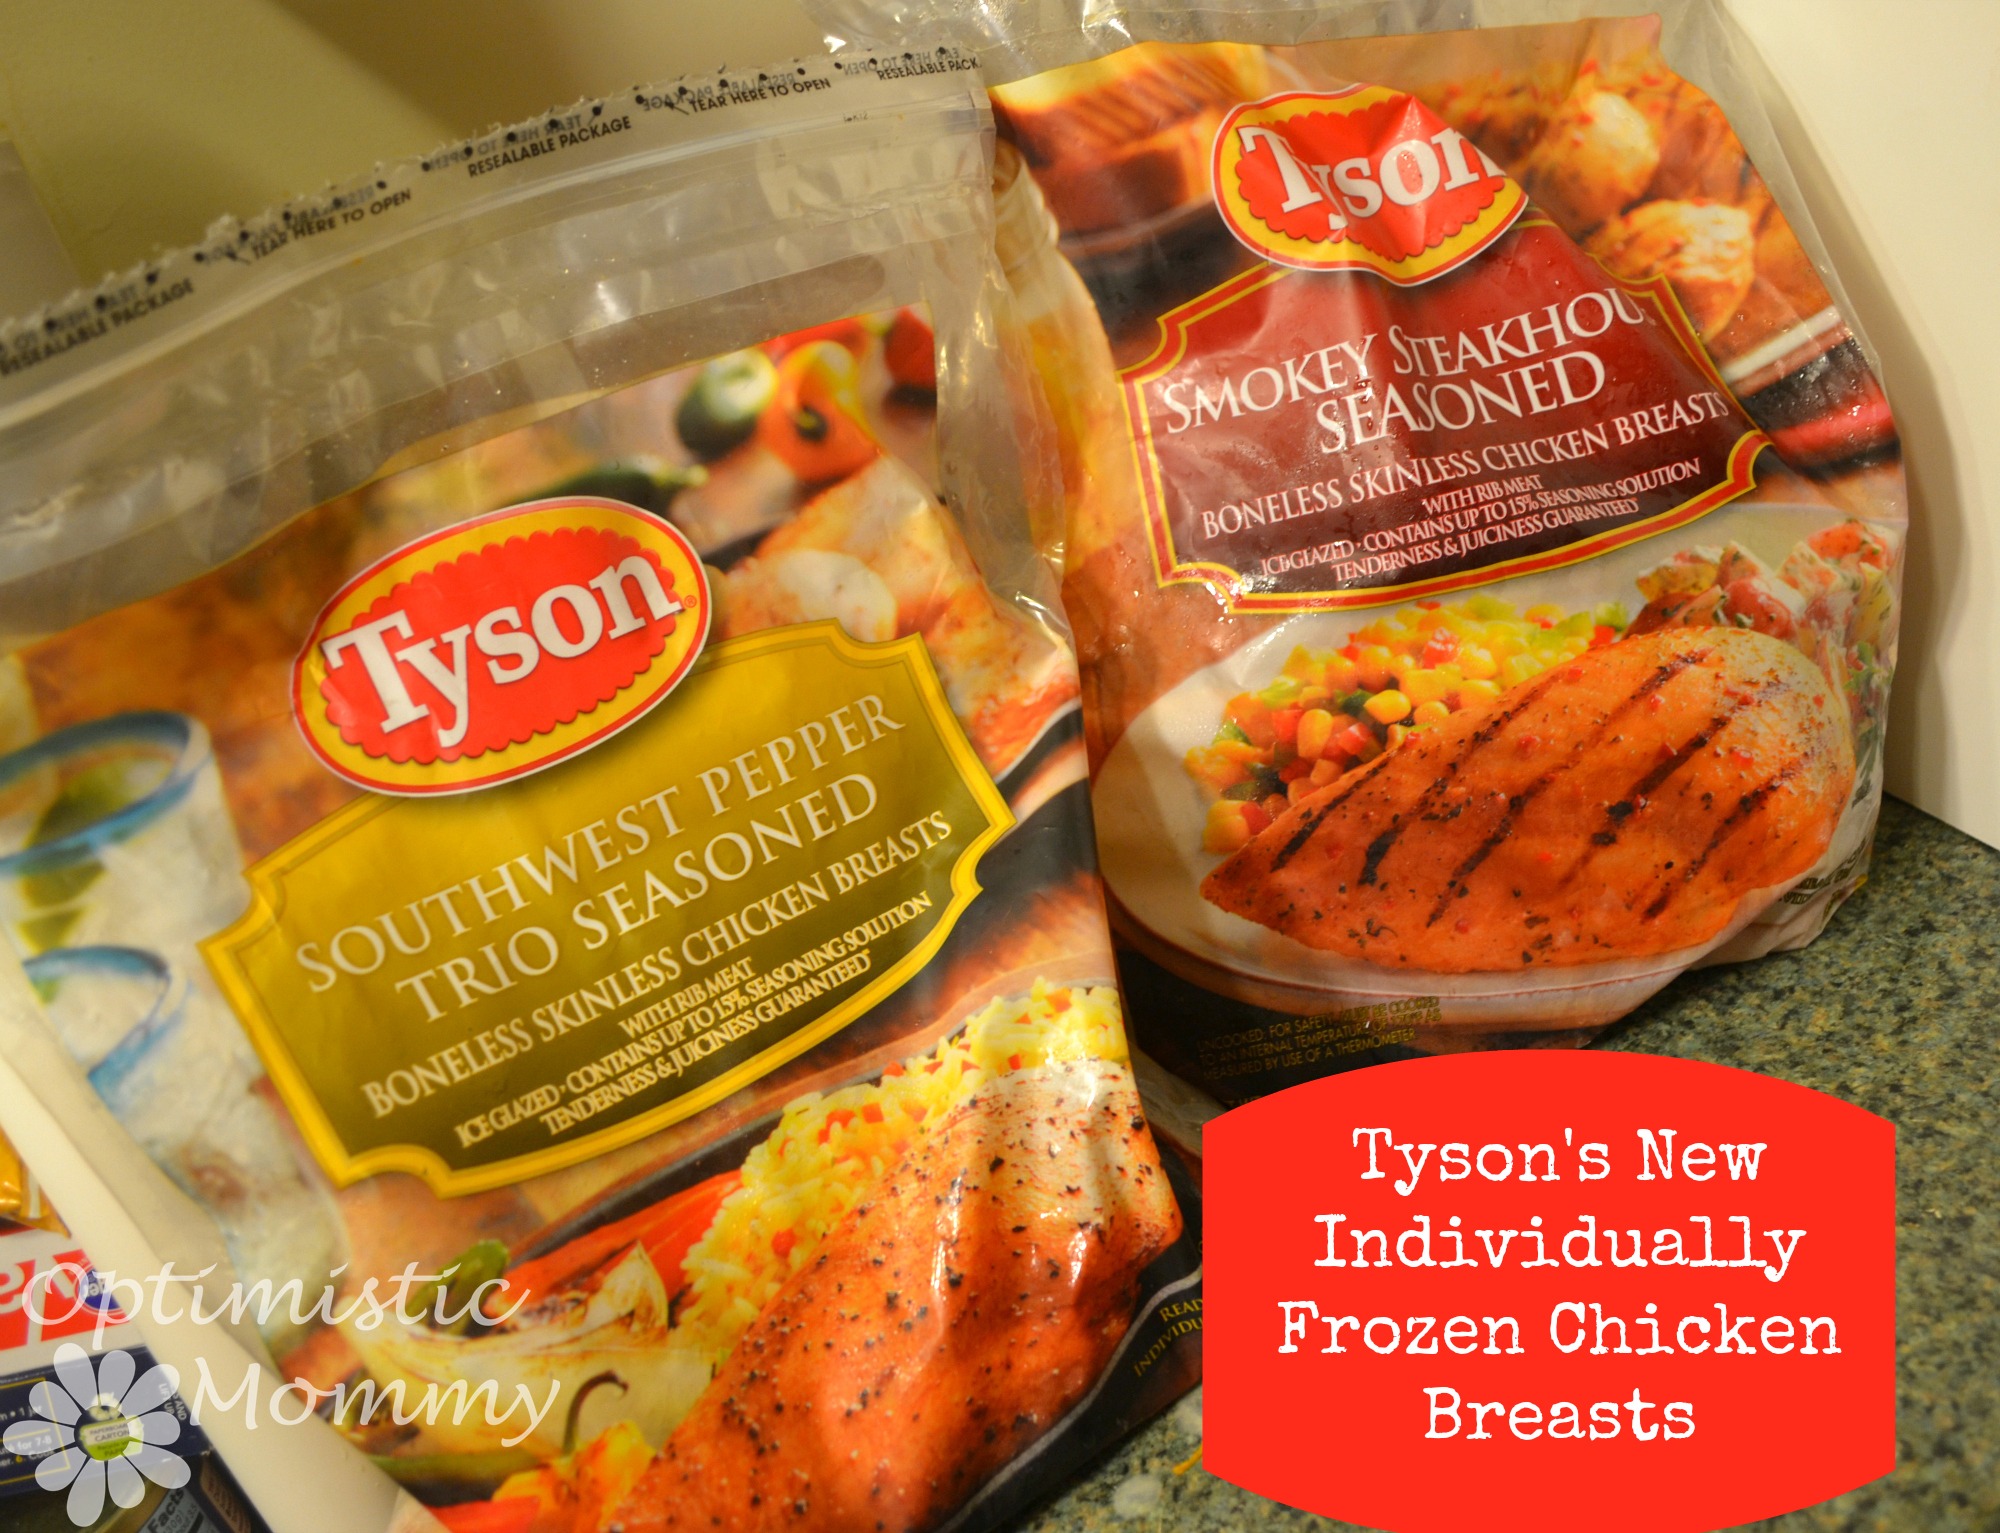 Tyson Individually Frozen Chicken in NEW Flavors - Smokey Steakhouse Seasoned & Southwest Pepper Trio Seasoned